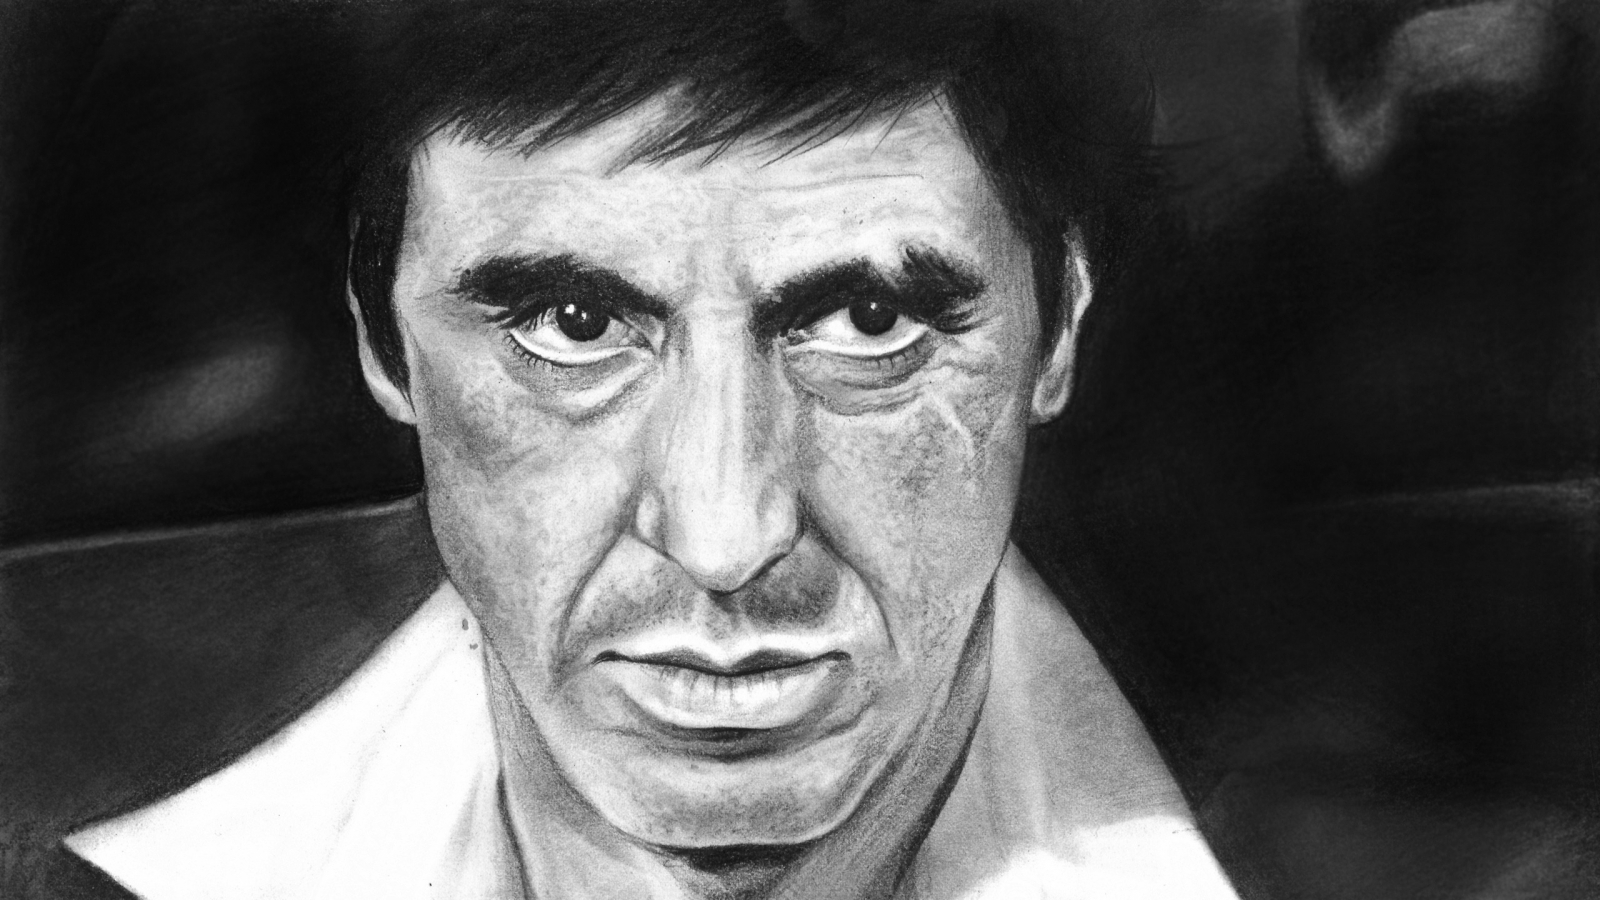 Al Pacino Scarface Fan Art for 1600 x 900 HDTV resolution